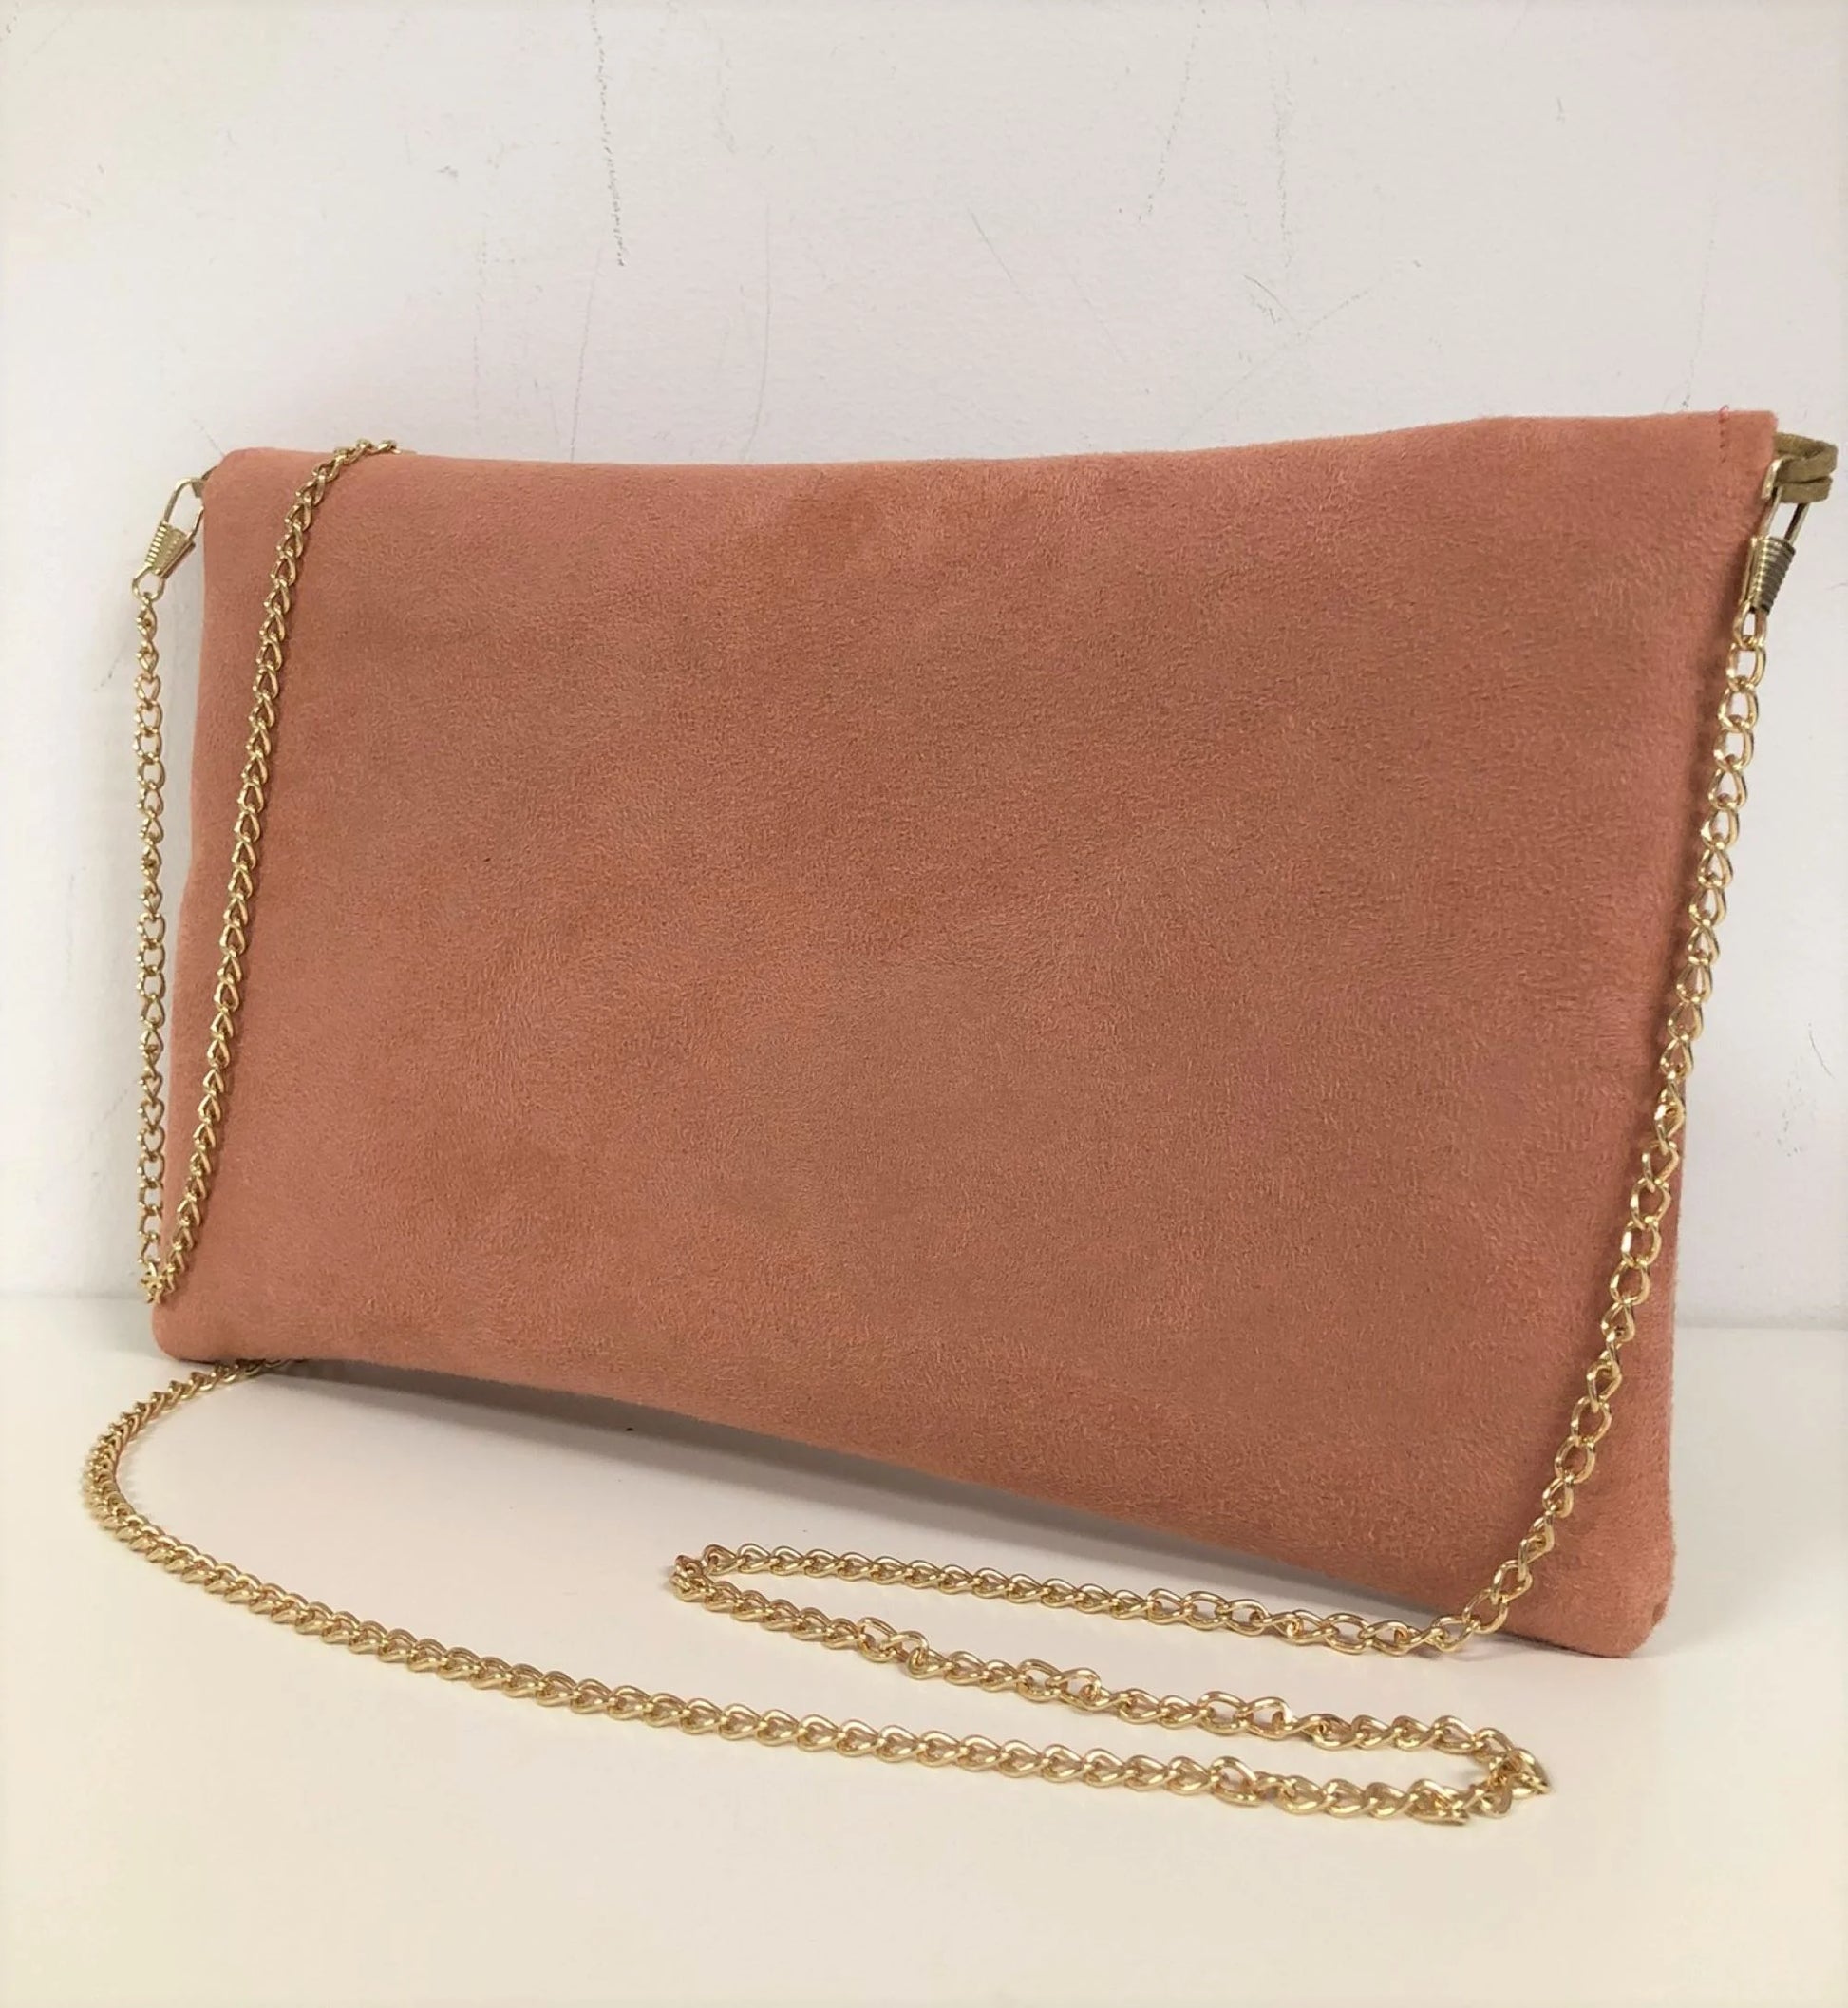 Le sac pochette Isa rose saumon à paillettes dorées, avec chainette amovible, vue de dos.